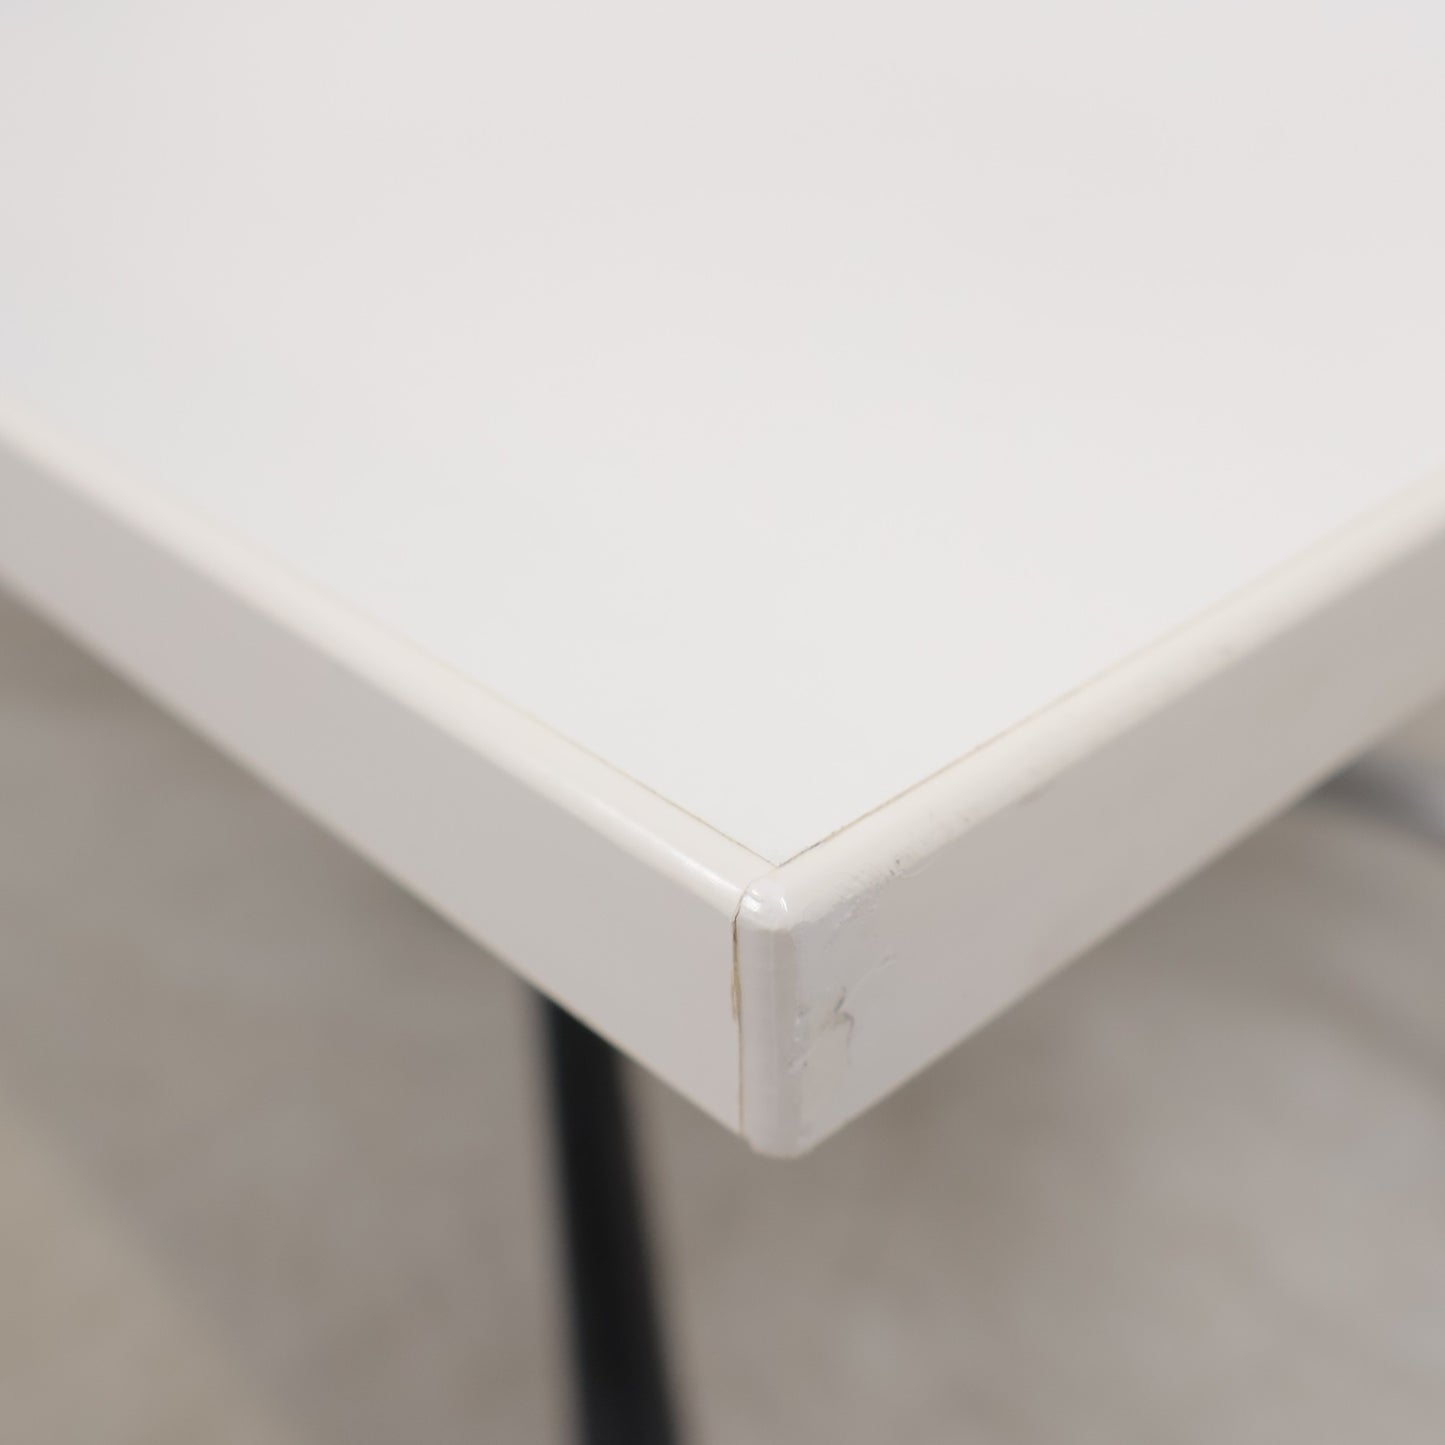 Kvalitetssikret | Elektrisk hev/senk arbeidsbord med hvit plate og grått understell